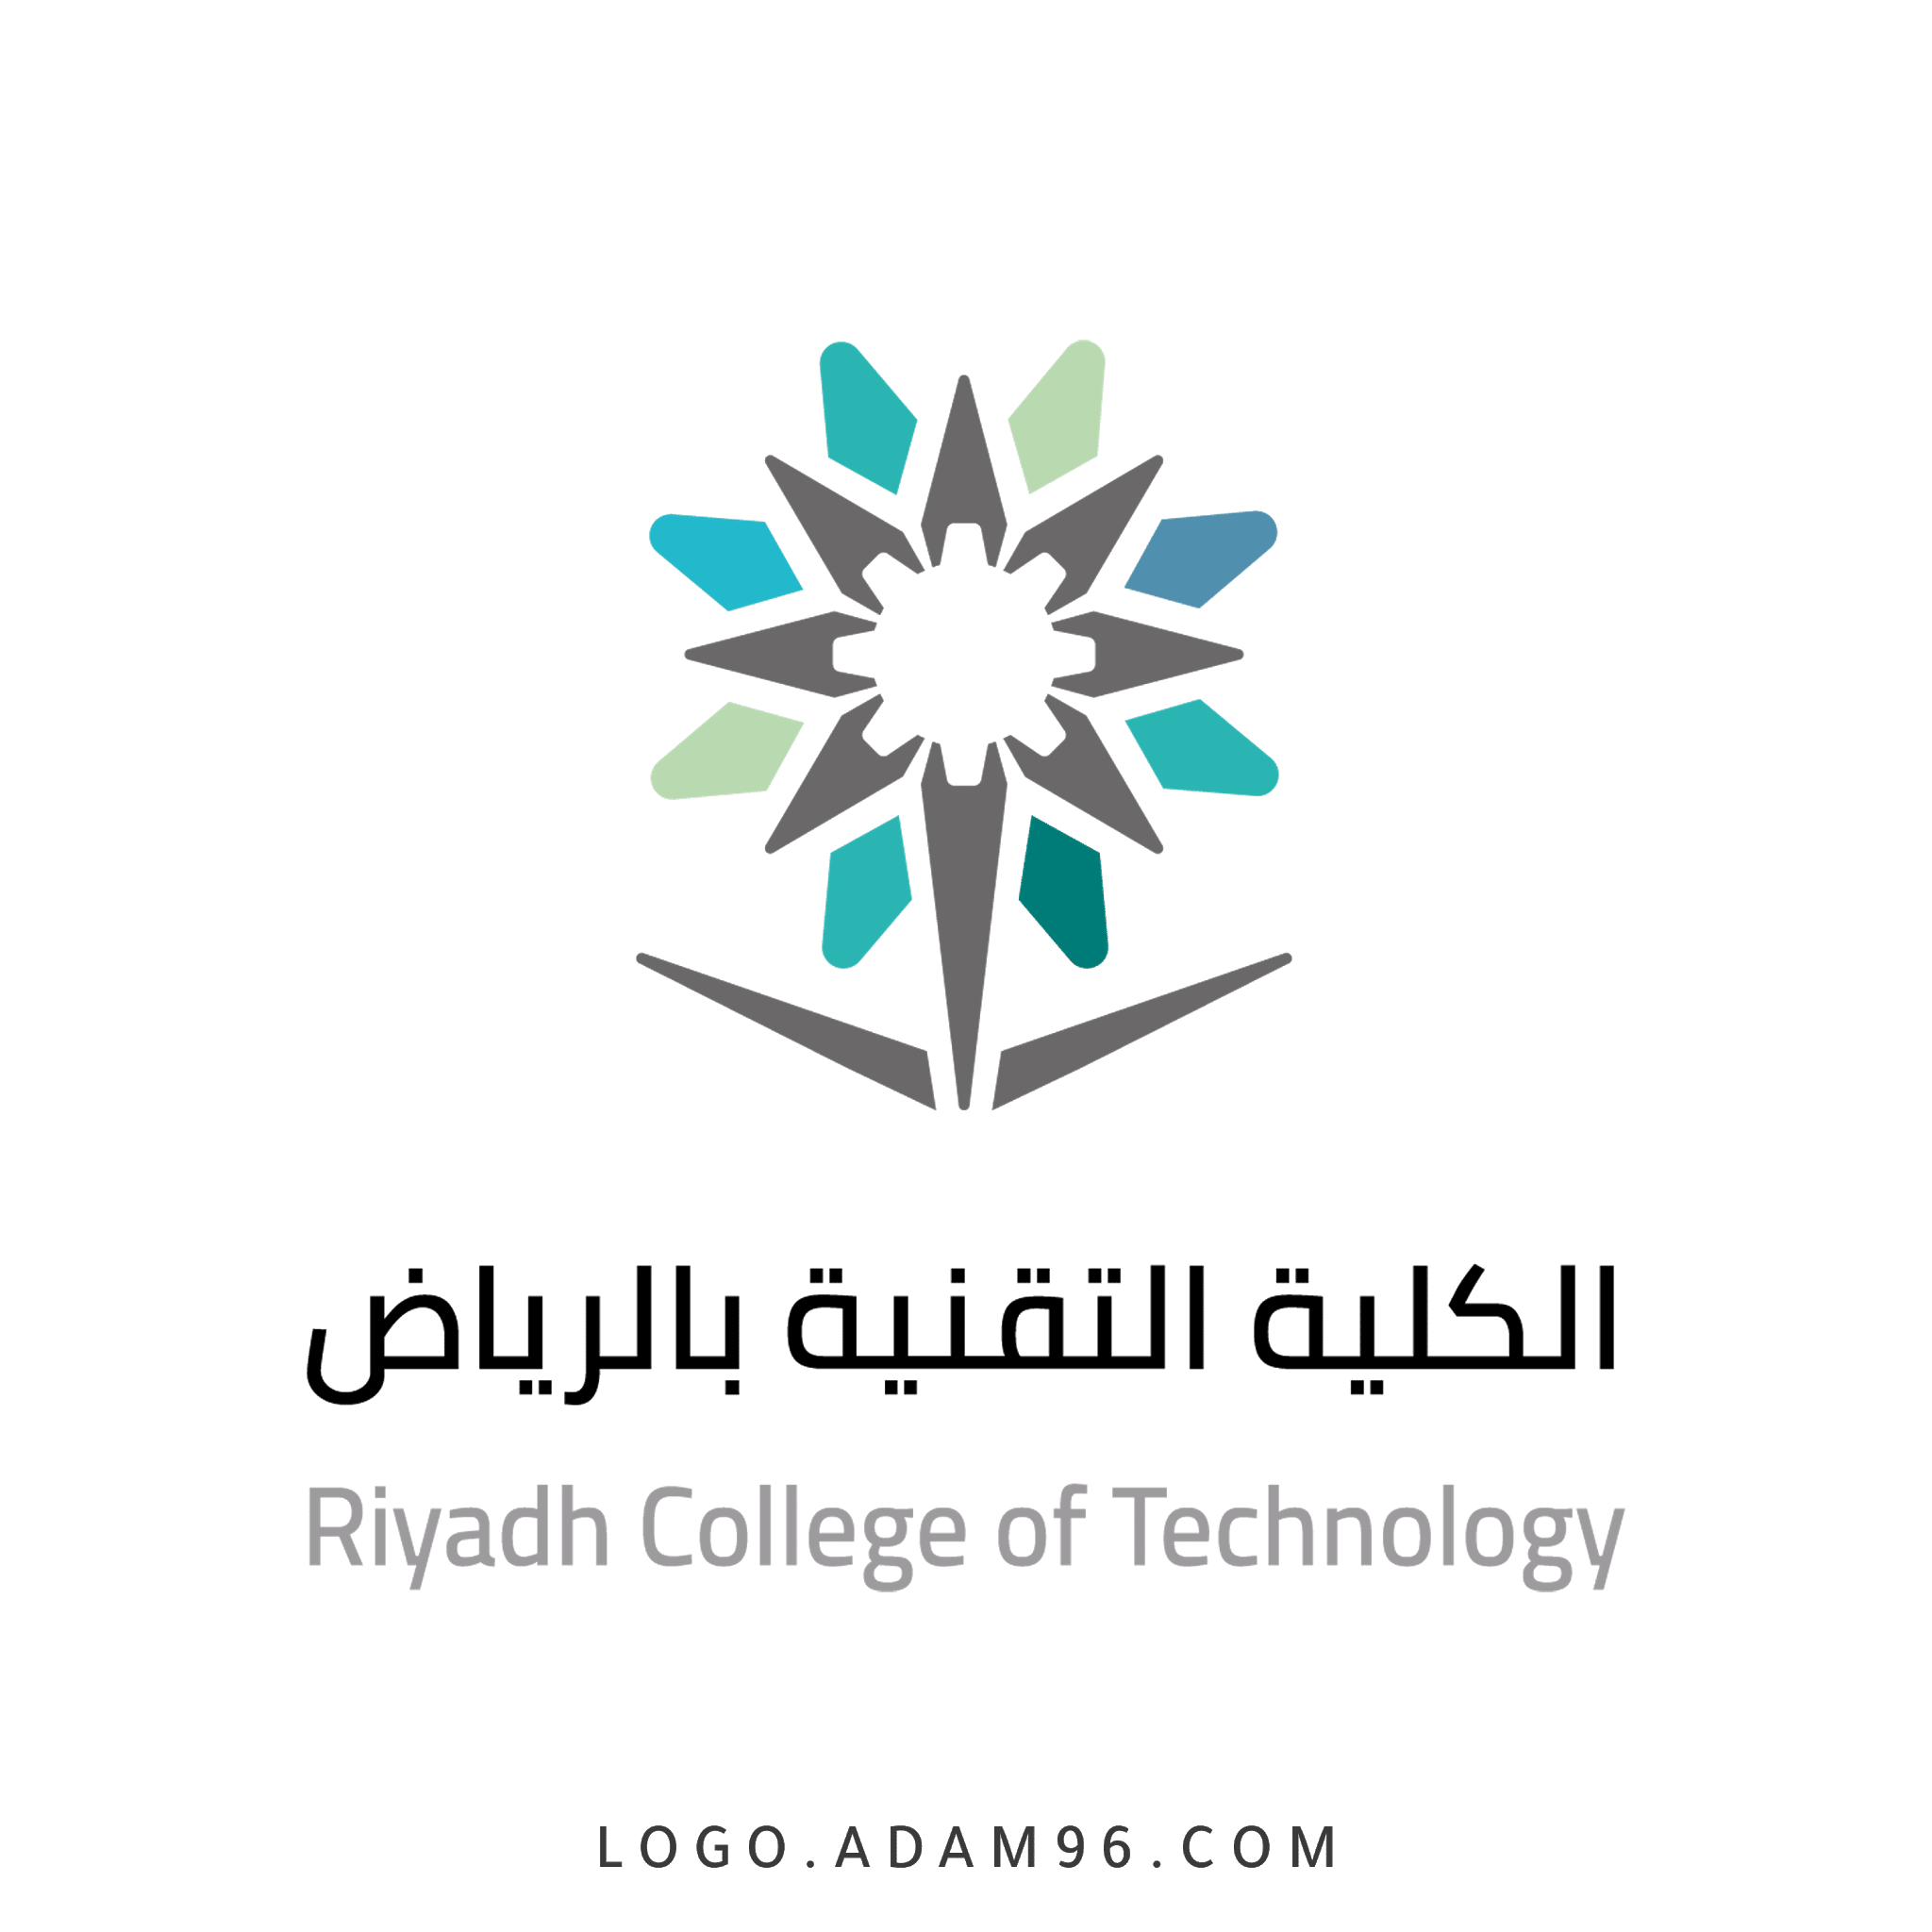 لقاء التوظيف في الكلية التقنية بالتعاون مع مجموعة العايد للصناعة – الرياض